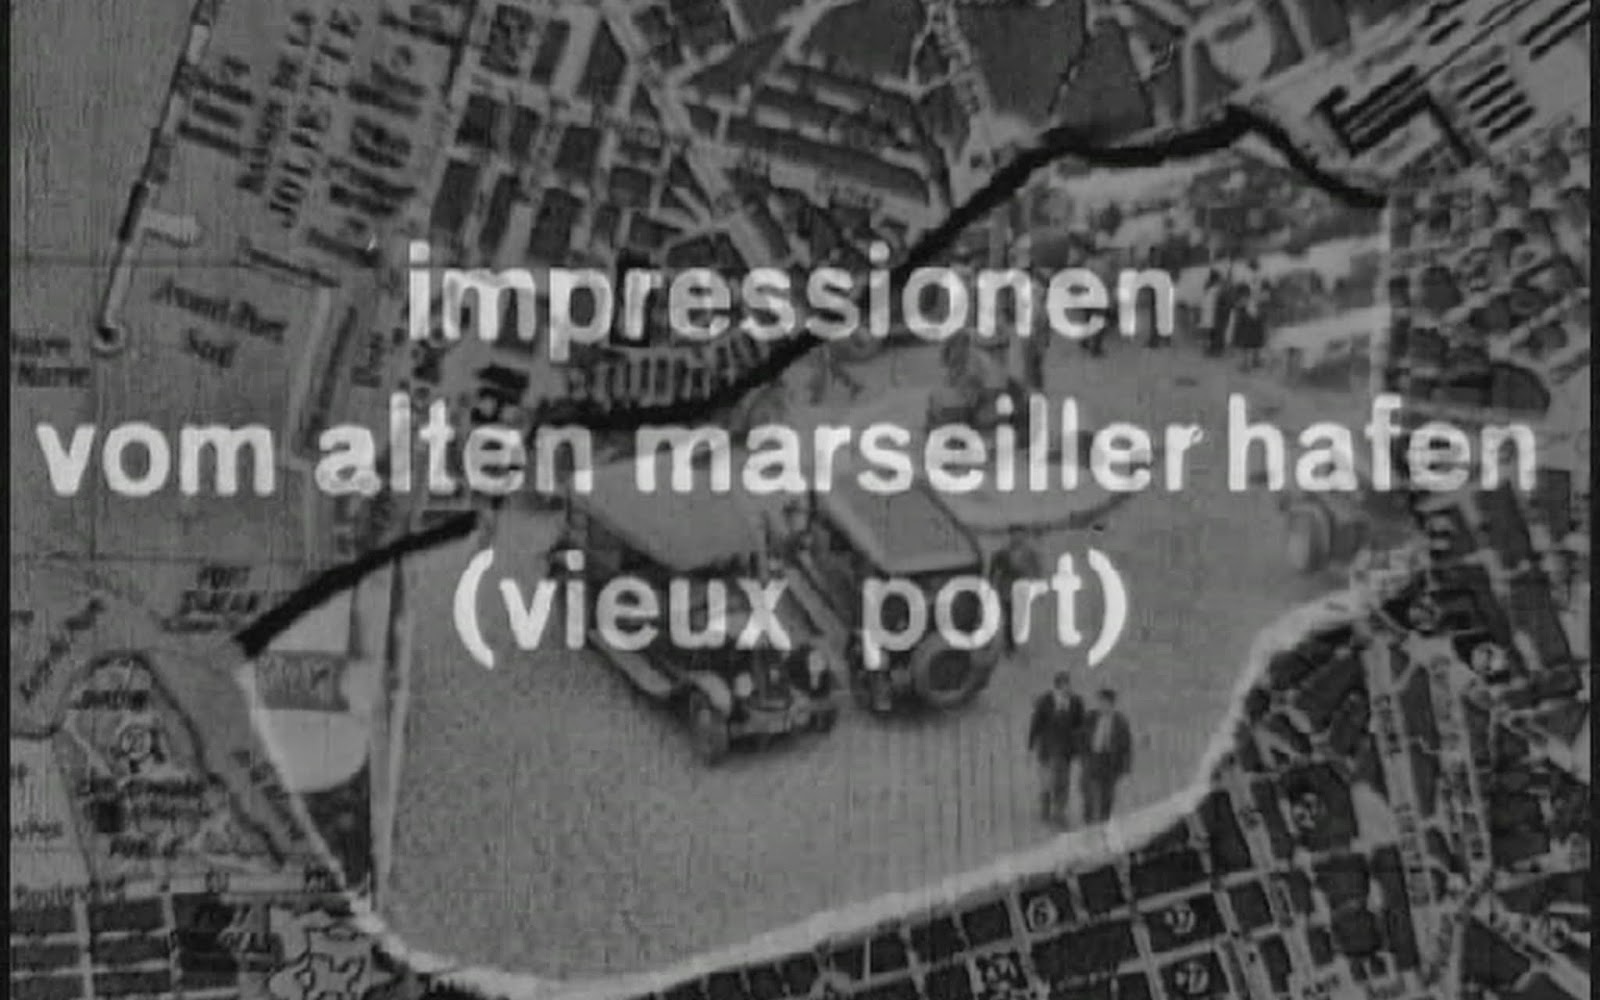 Doctor Ojiplático. Impressionen vom alten marseiller Hafen (vieux port). (1929). László Moholy-Nagy. Sinfonía Urbana (City Simphony)